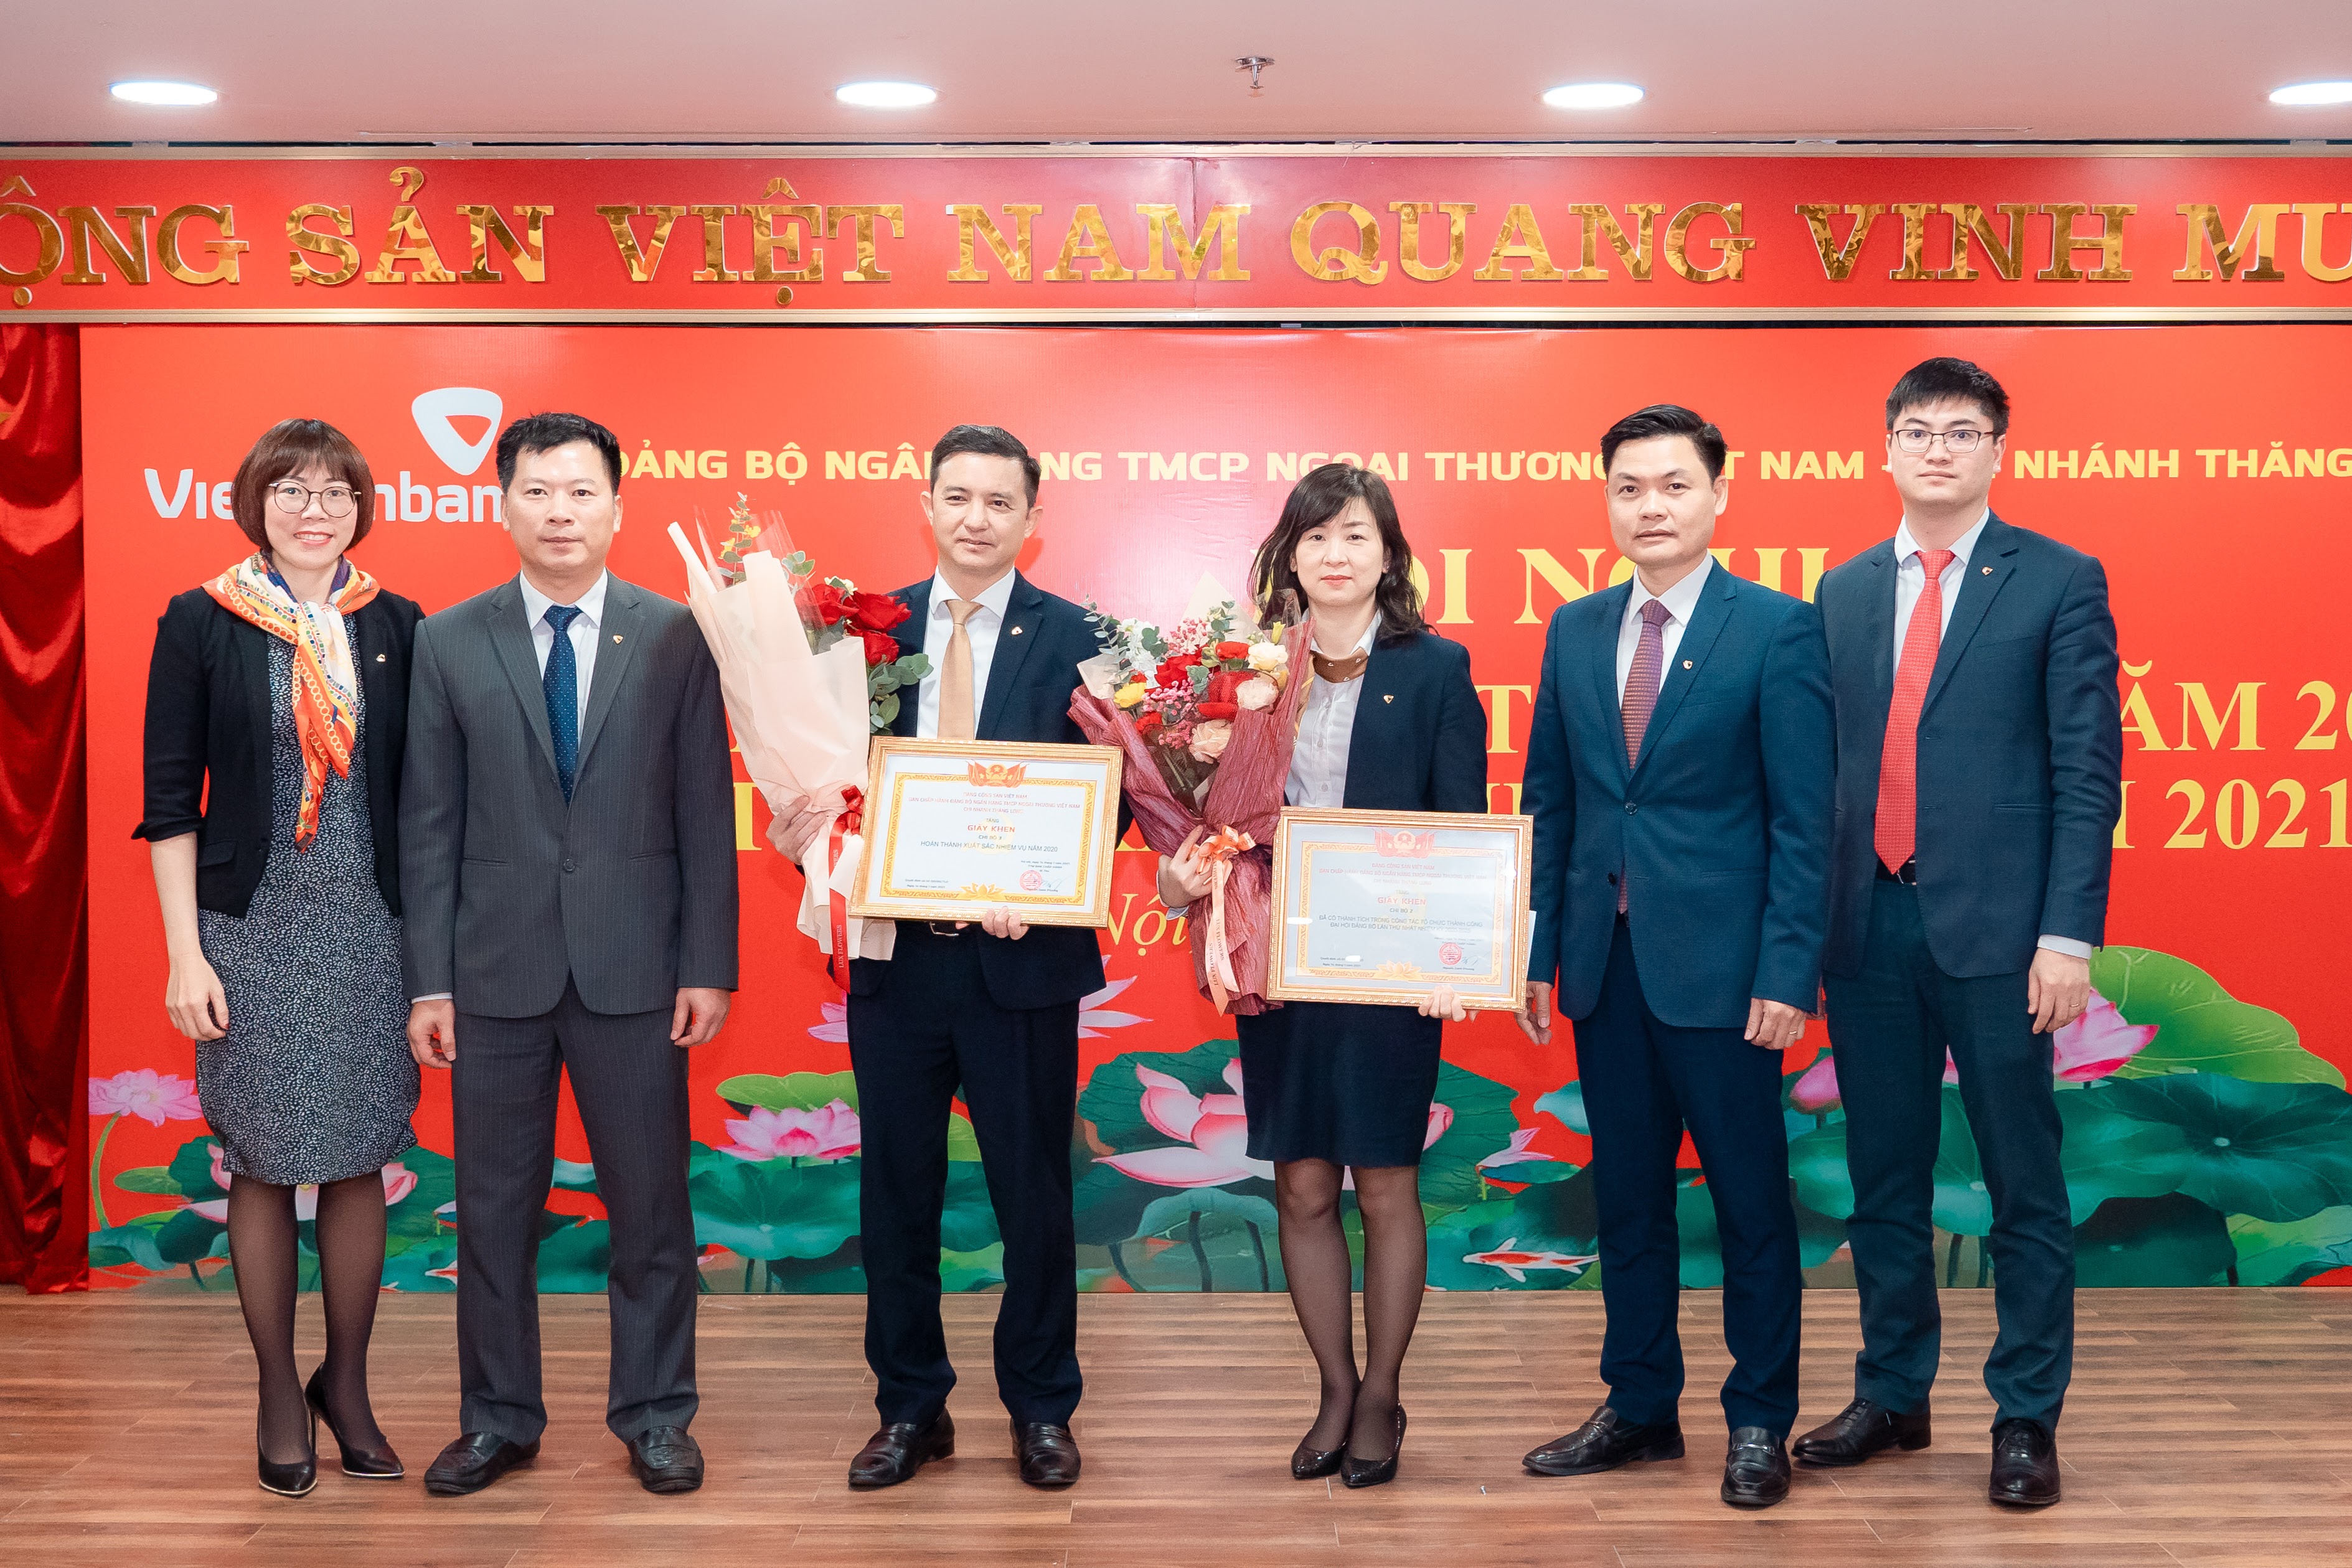 Đảng bộ Vietcombank Thăng Long tổ chức hội nghị  tổng kết công tác đảng năm 2020 và triển khai nhiệm vụ năm 2021